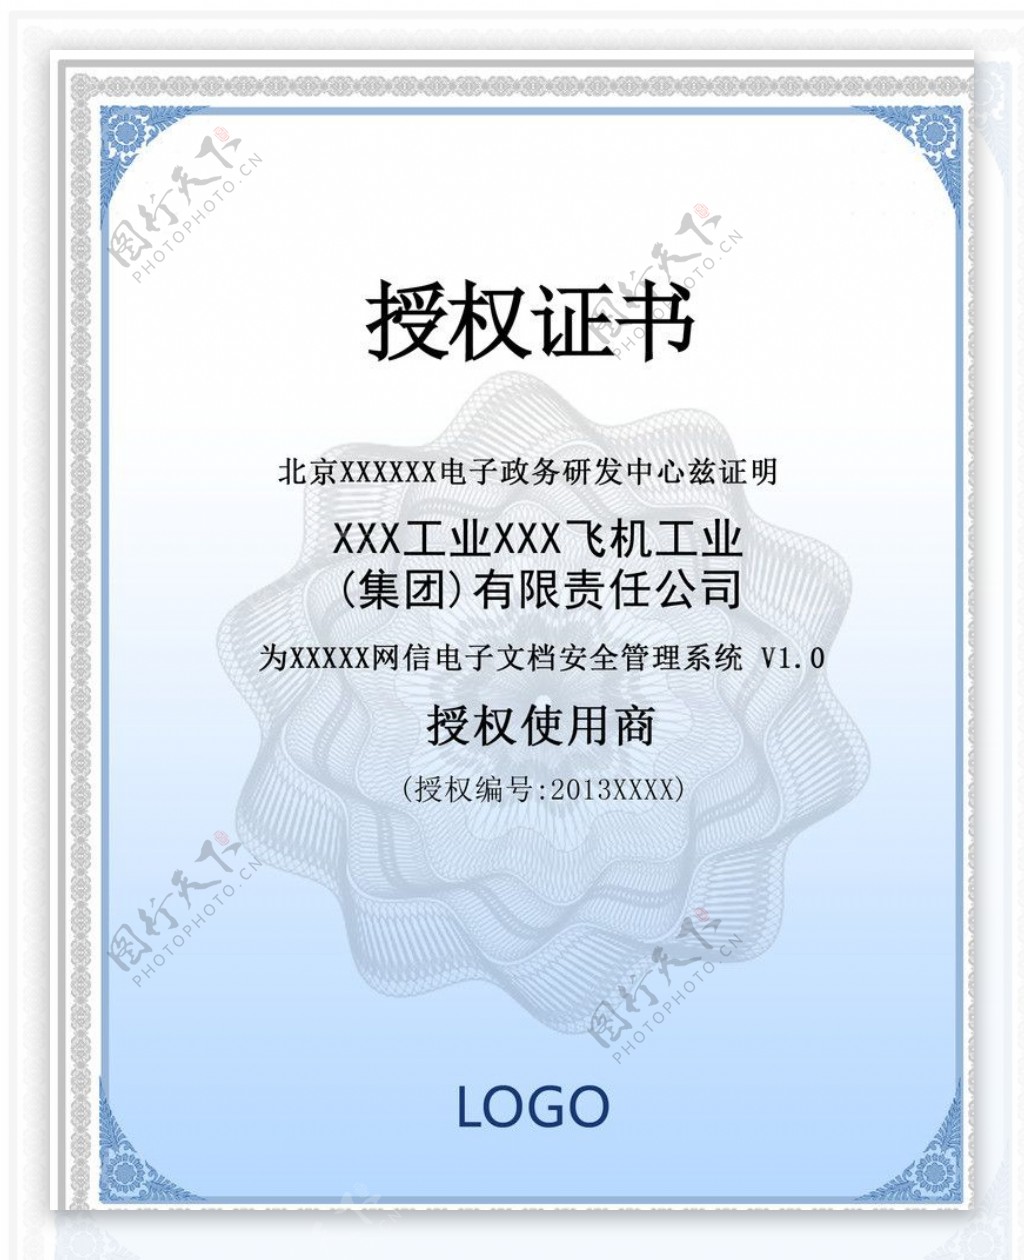 商业企业授权证书图片